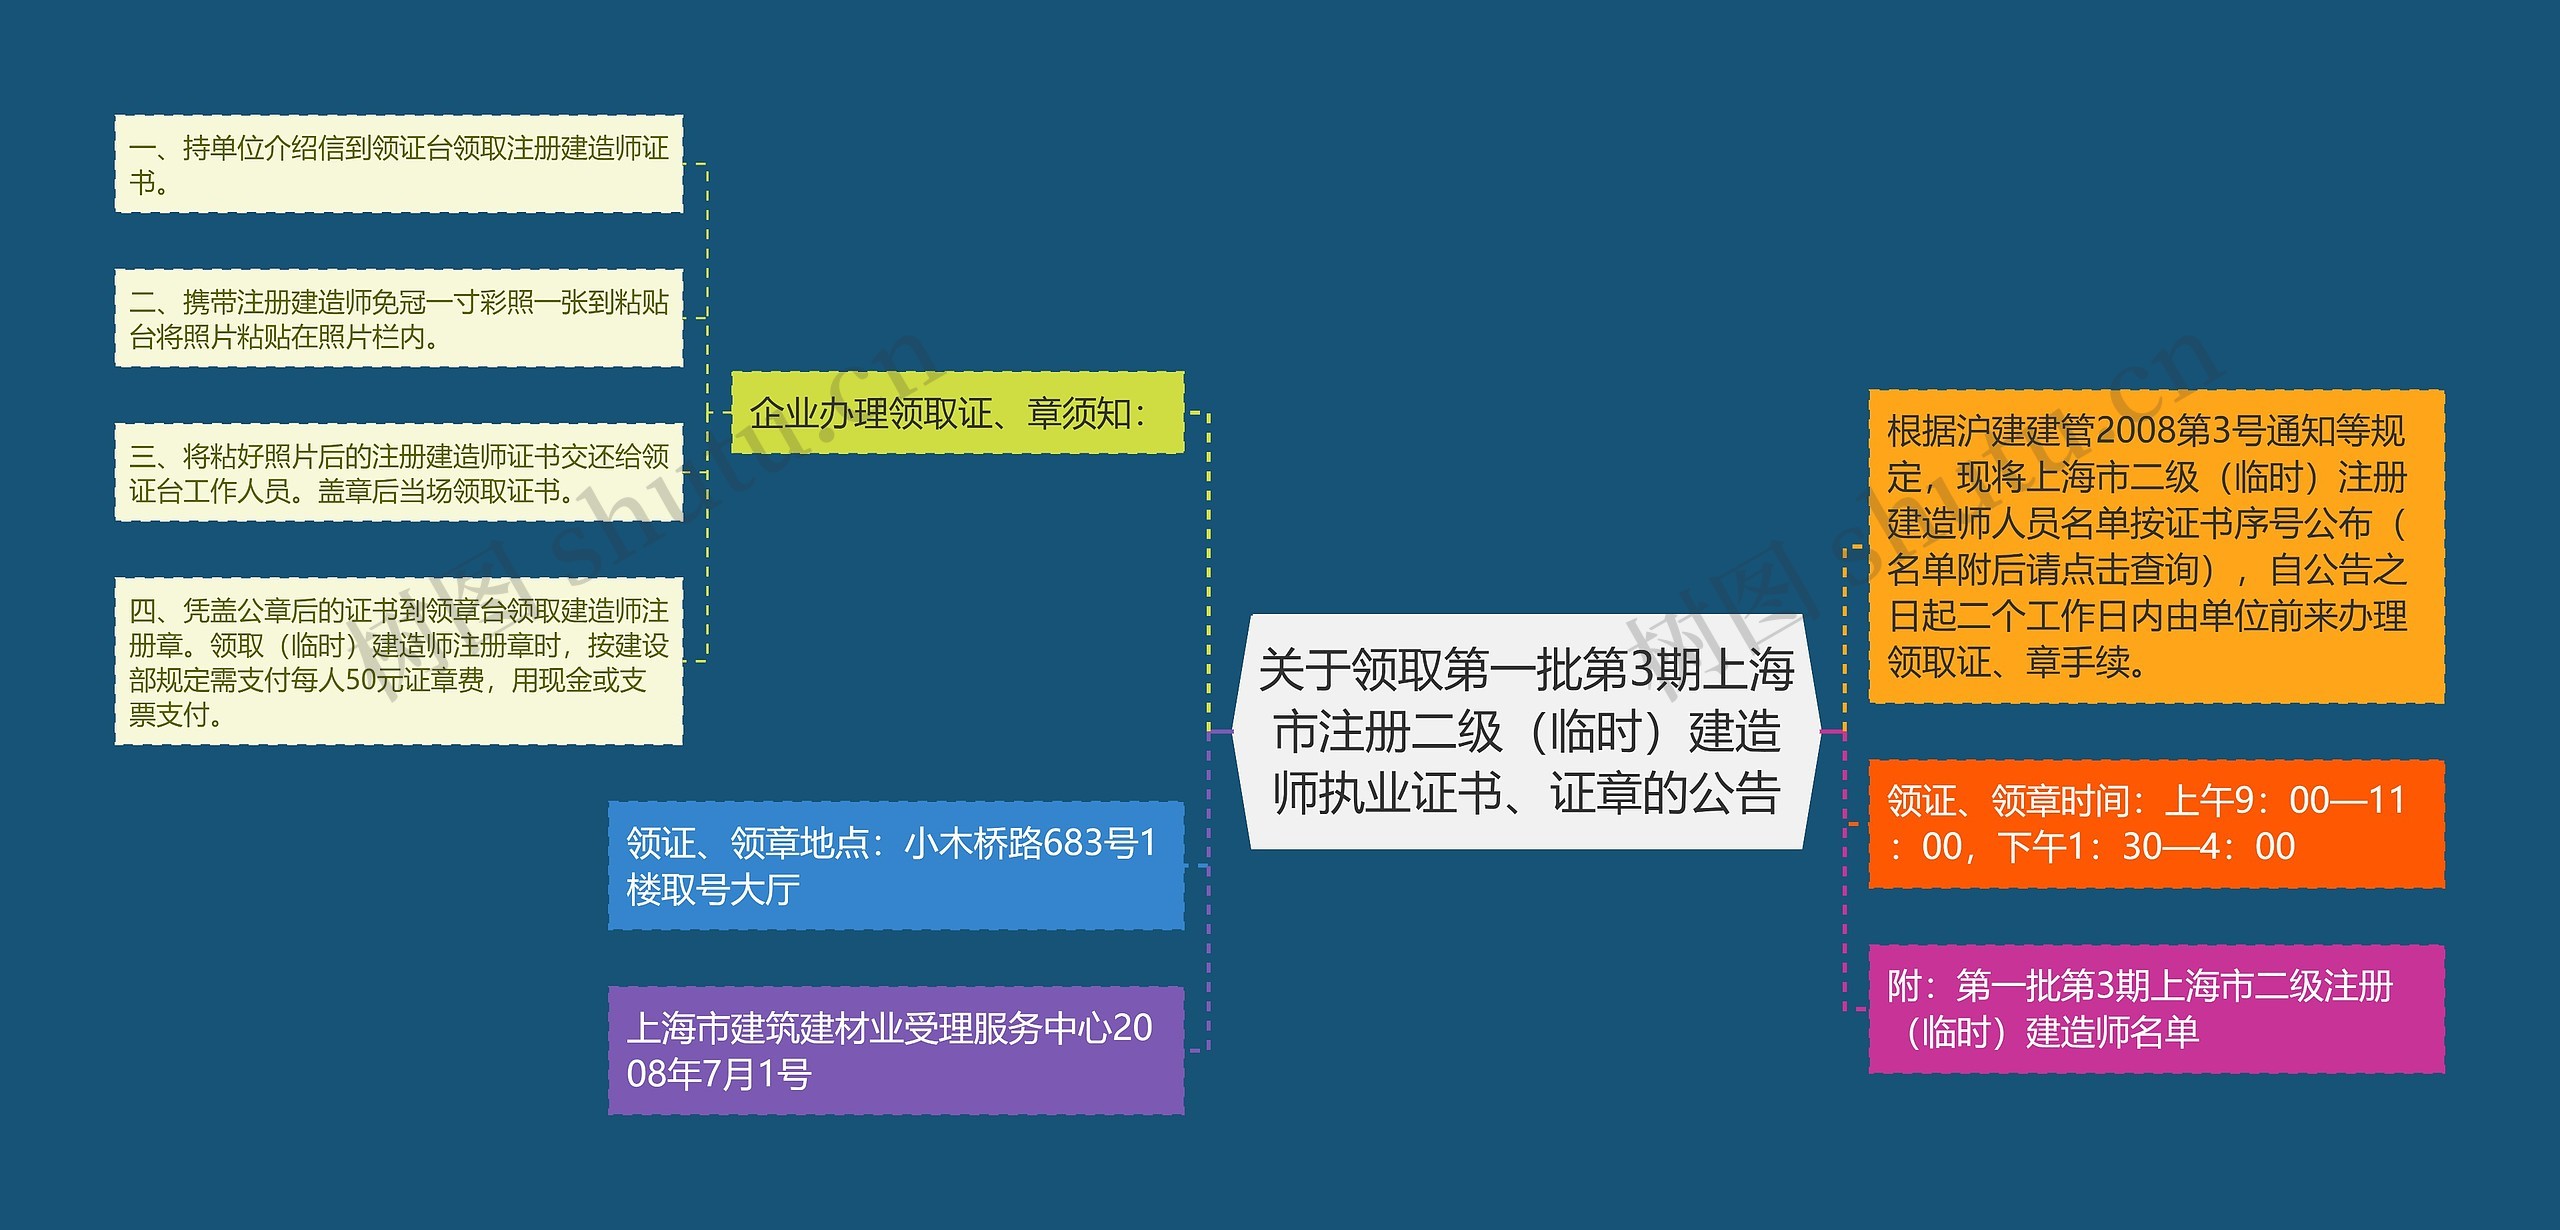 关于领取第一批第3期上海市注册二级（临时）建造师执业证书、证章的公告思维导图